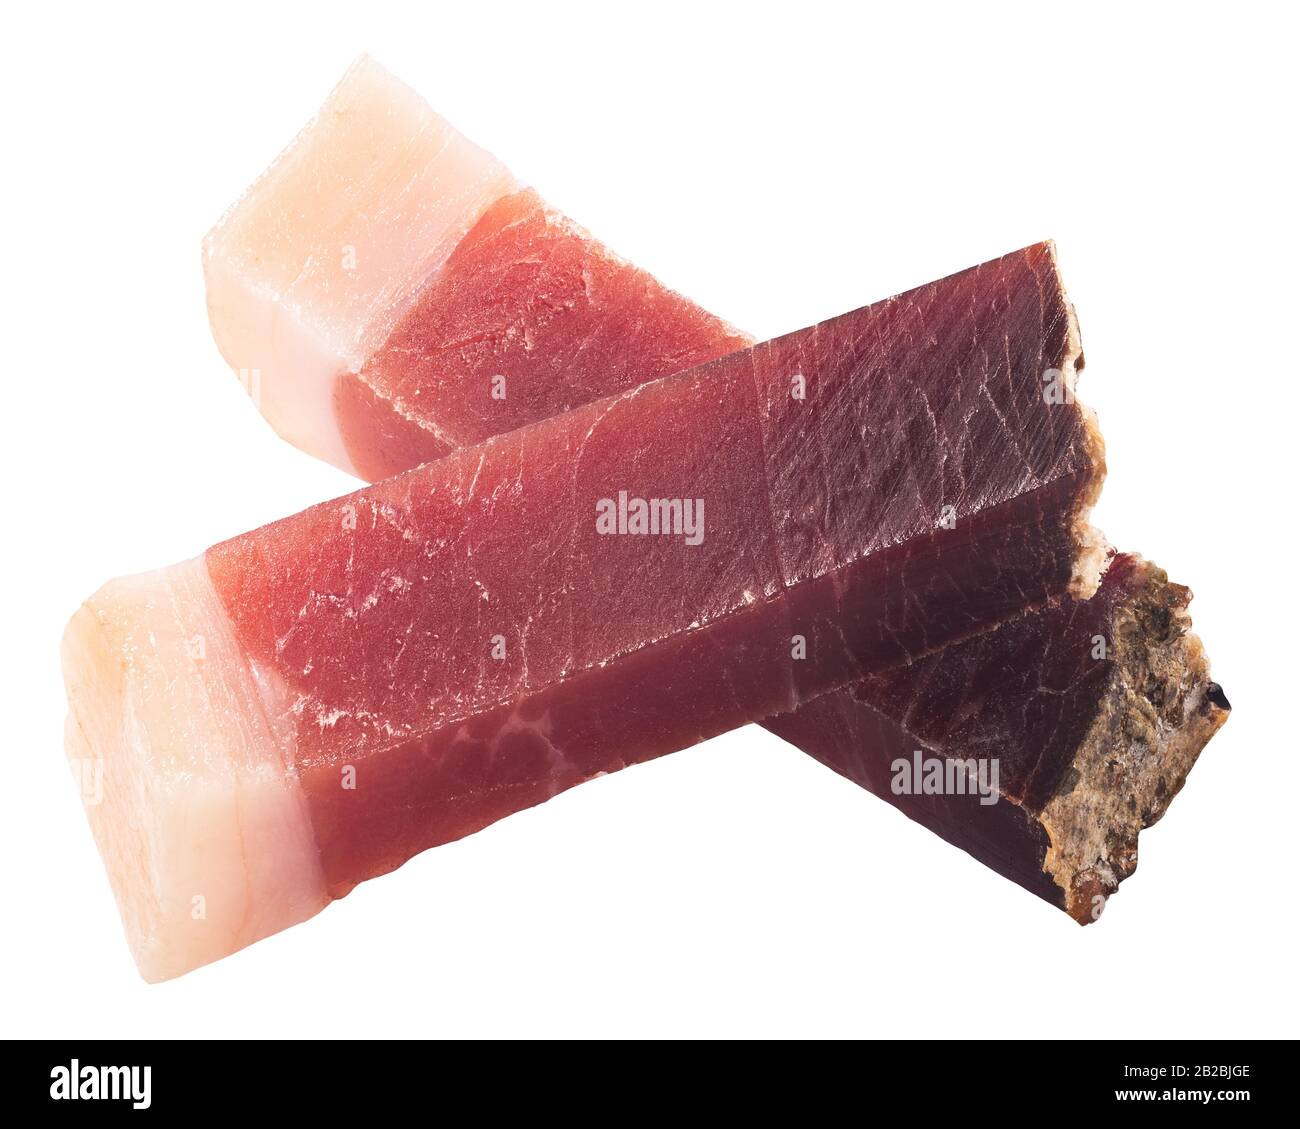 Bastoncini di Speck, una carne di maiale vulcanizzata altoatesina o prosciutto affumicato, isolati Foto Stock